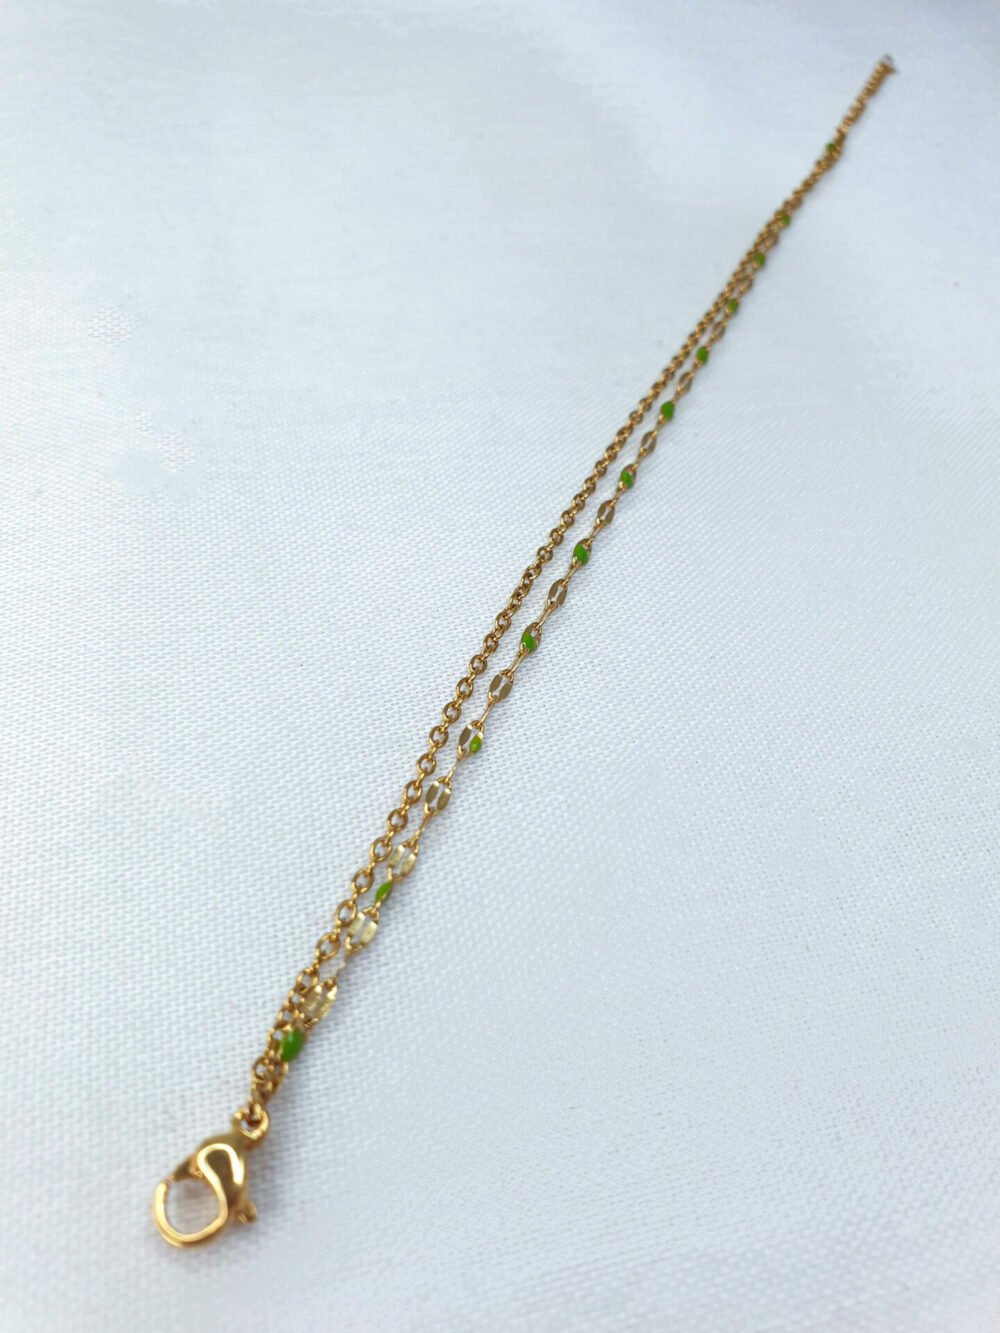 bijoux femme barcelone acier inoxydable laiton plaqué or doré fait main collier double chaine perle émaille coloré vert olive kaki bracelet